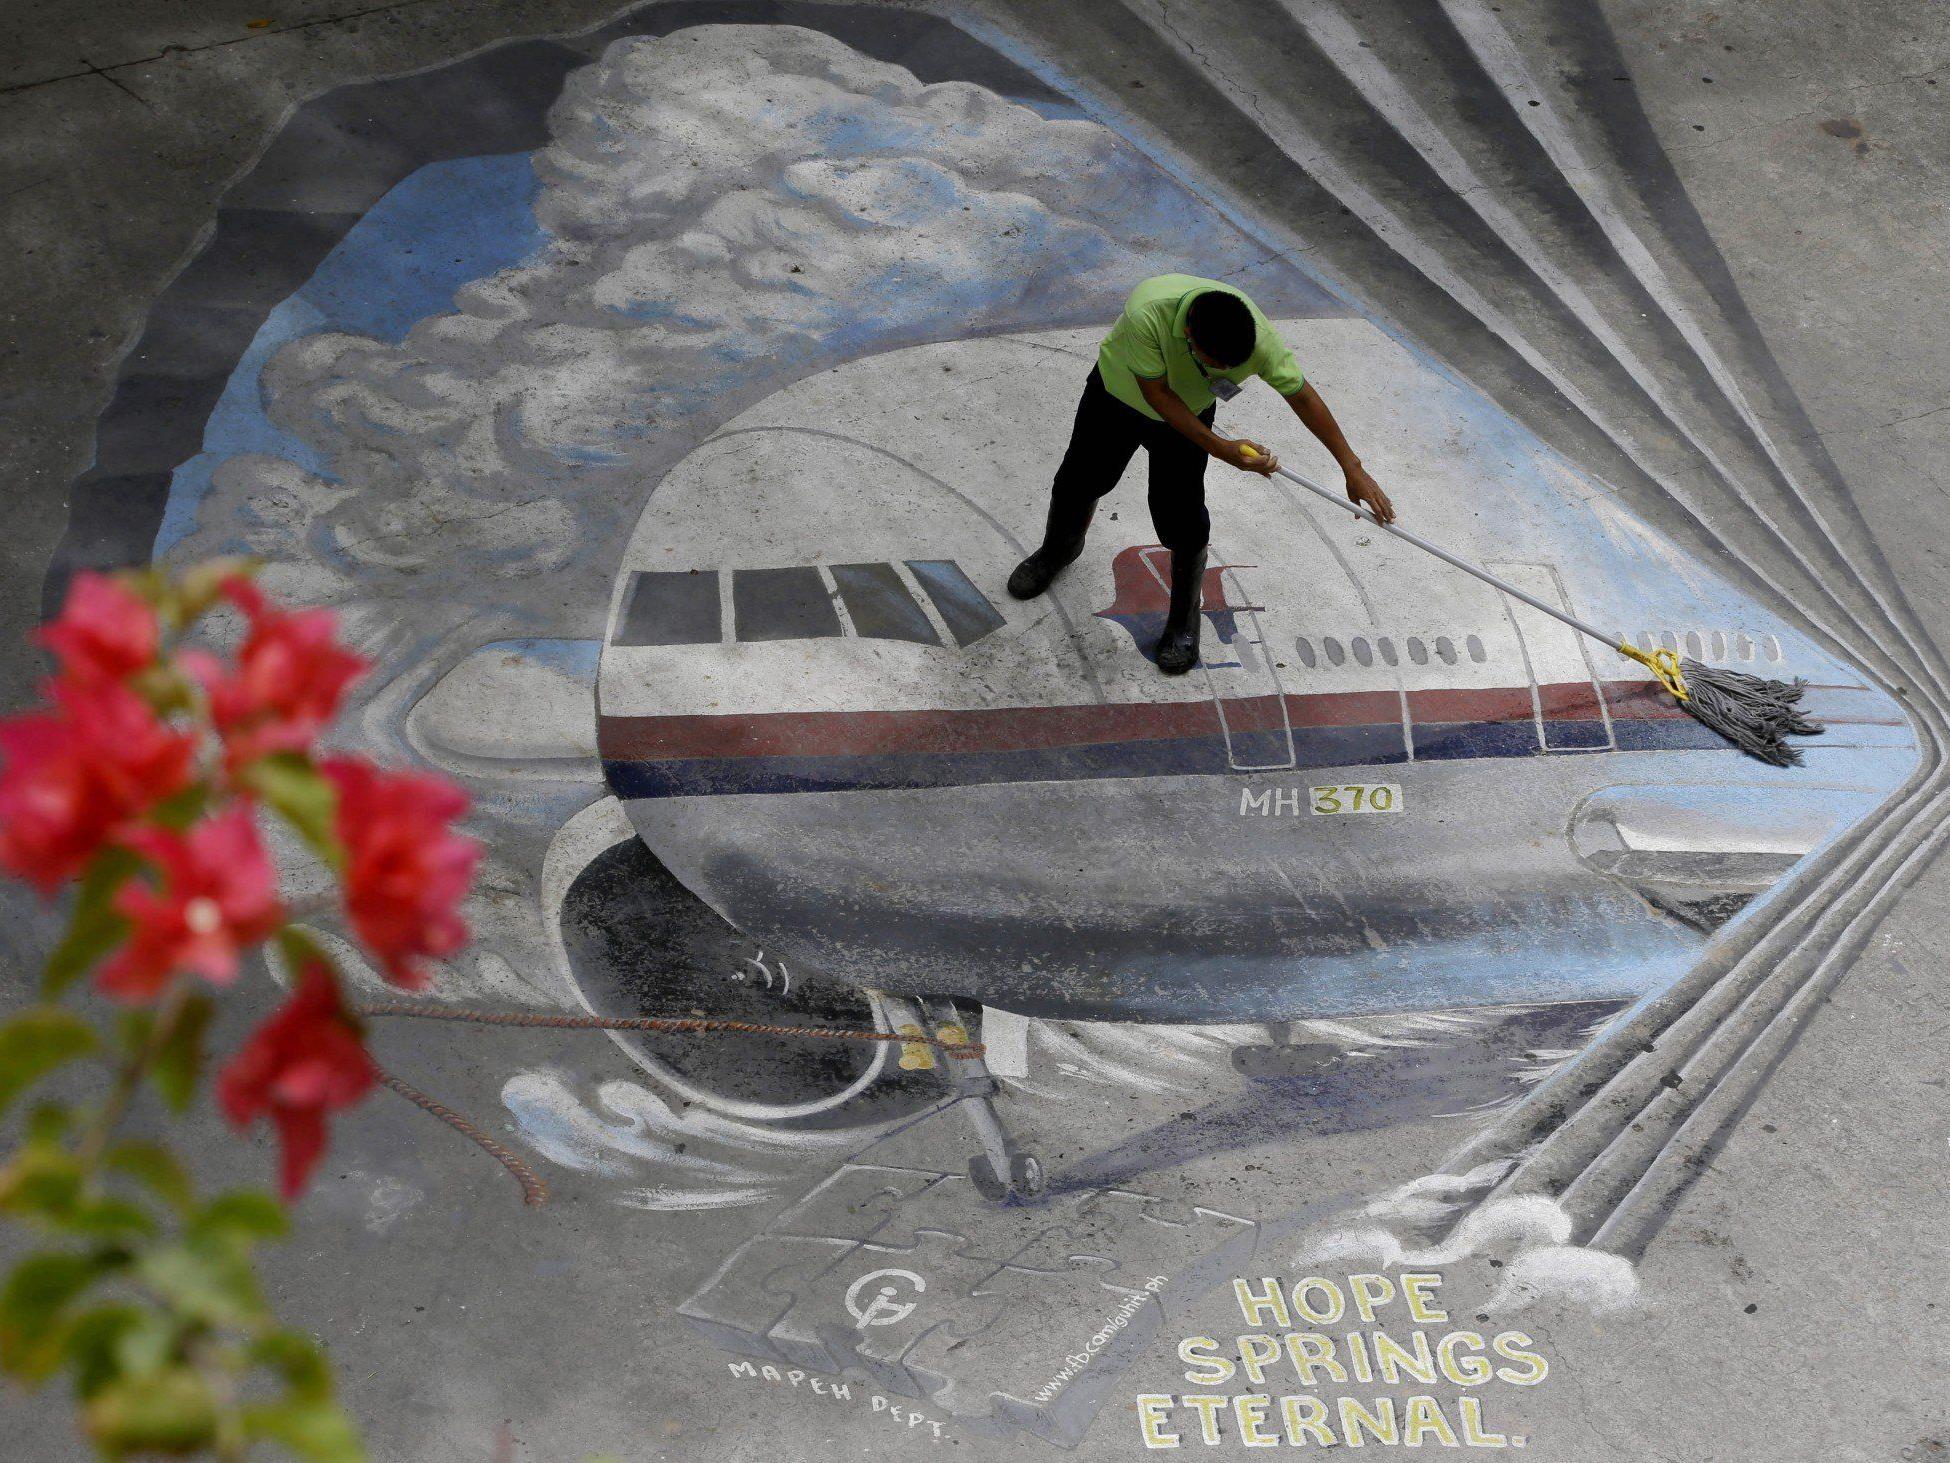 Flugzeug vermisst - Neue Signale bei MH370-Suche geortet